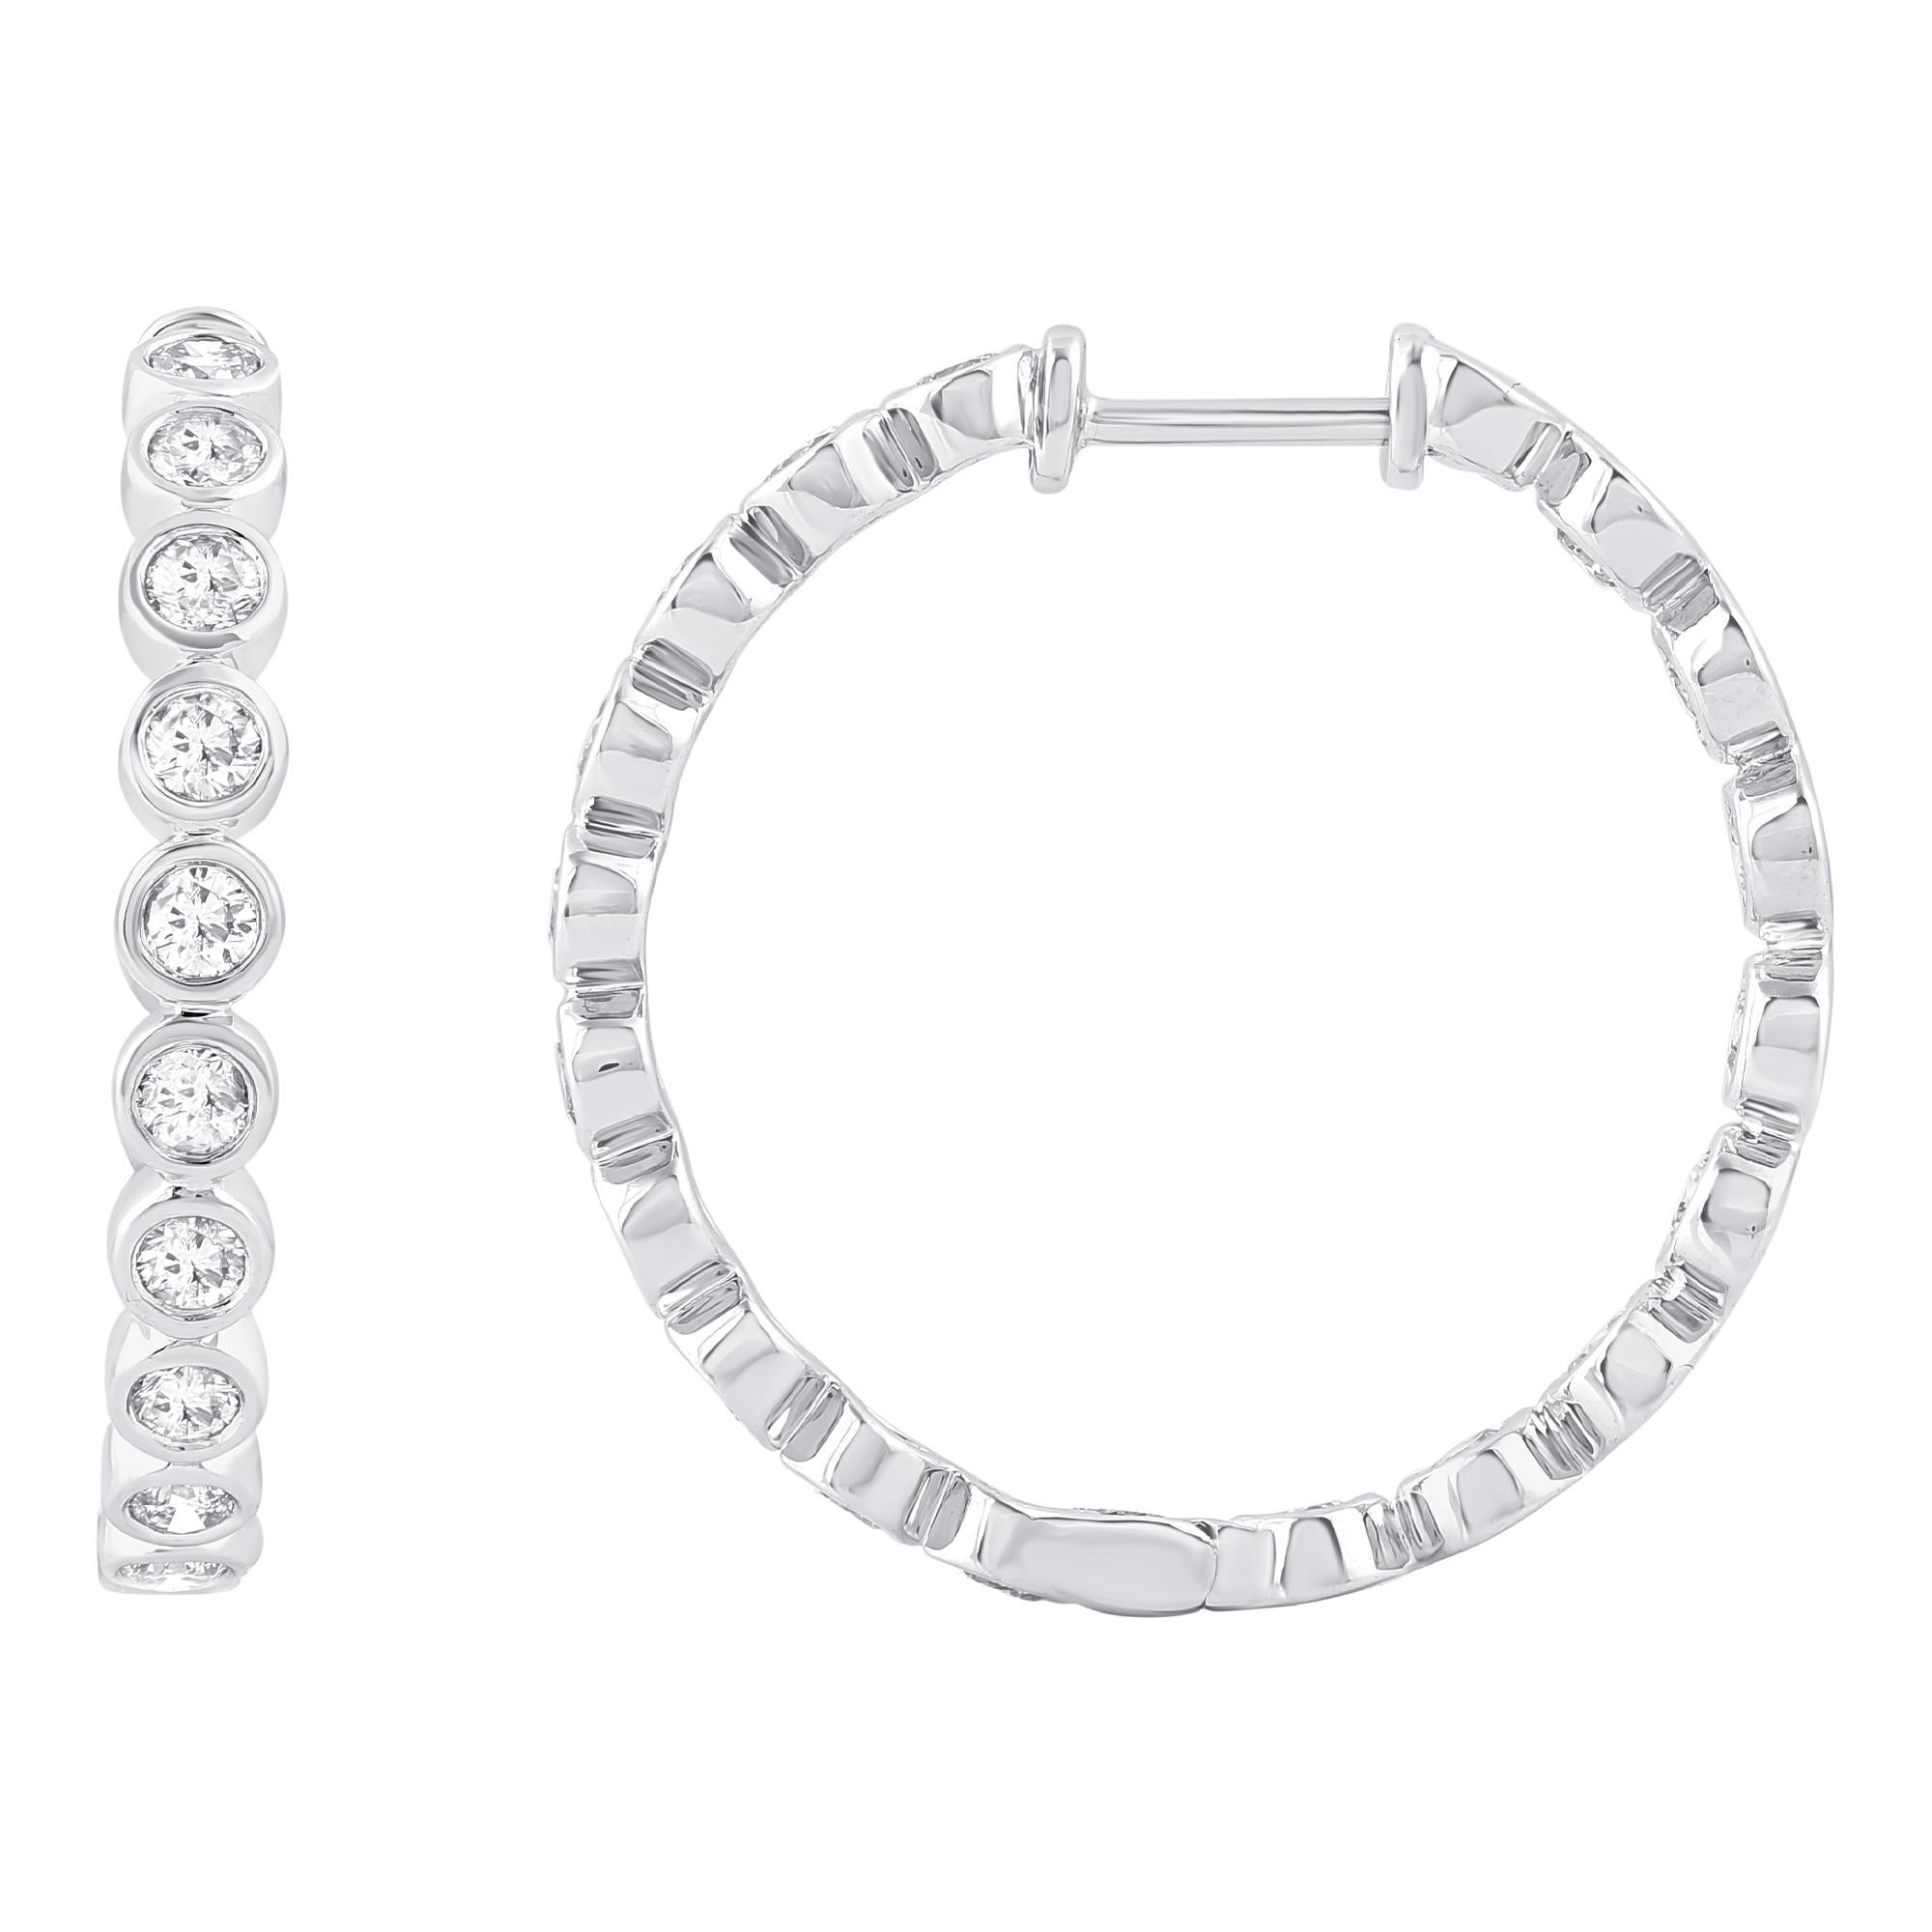 Diese exquisiten Diamant-Ohrringe sind aus 14 Karat Weißgold gefertigt und verfügen über 36 runde Diamanten, die in einer Lünette gefasst sind. Diese Reif-Ohrringe  bequem mit Sicherheitsschloss sichern. Der Diamant hat ein Gesamtgewicht von 1,50